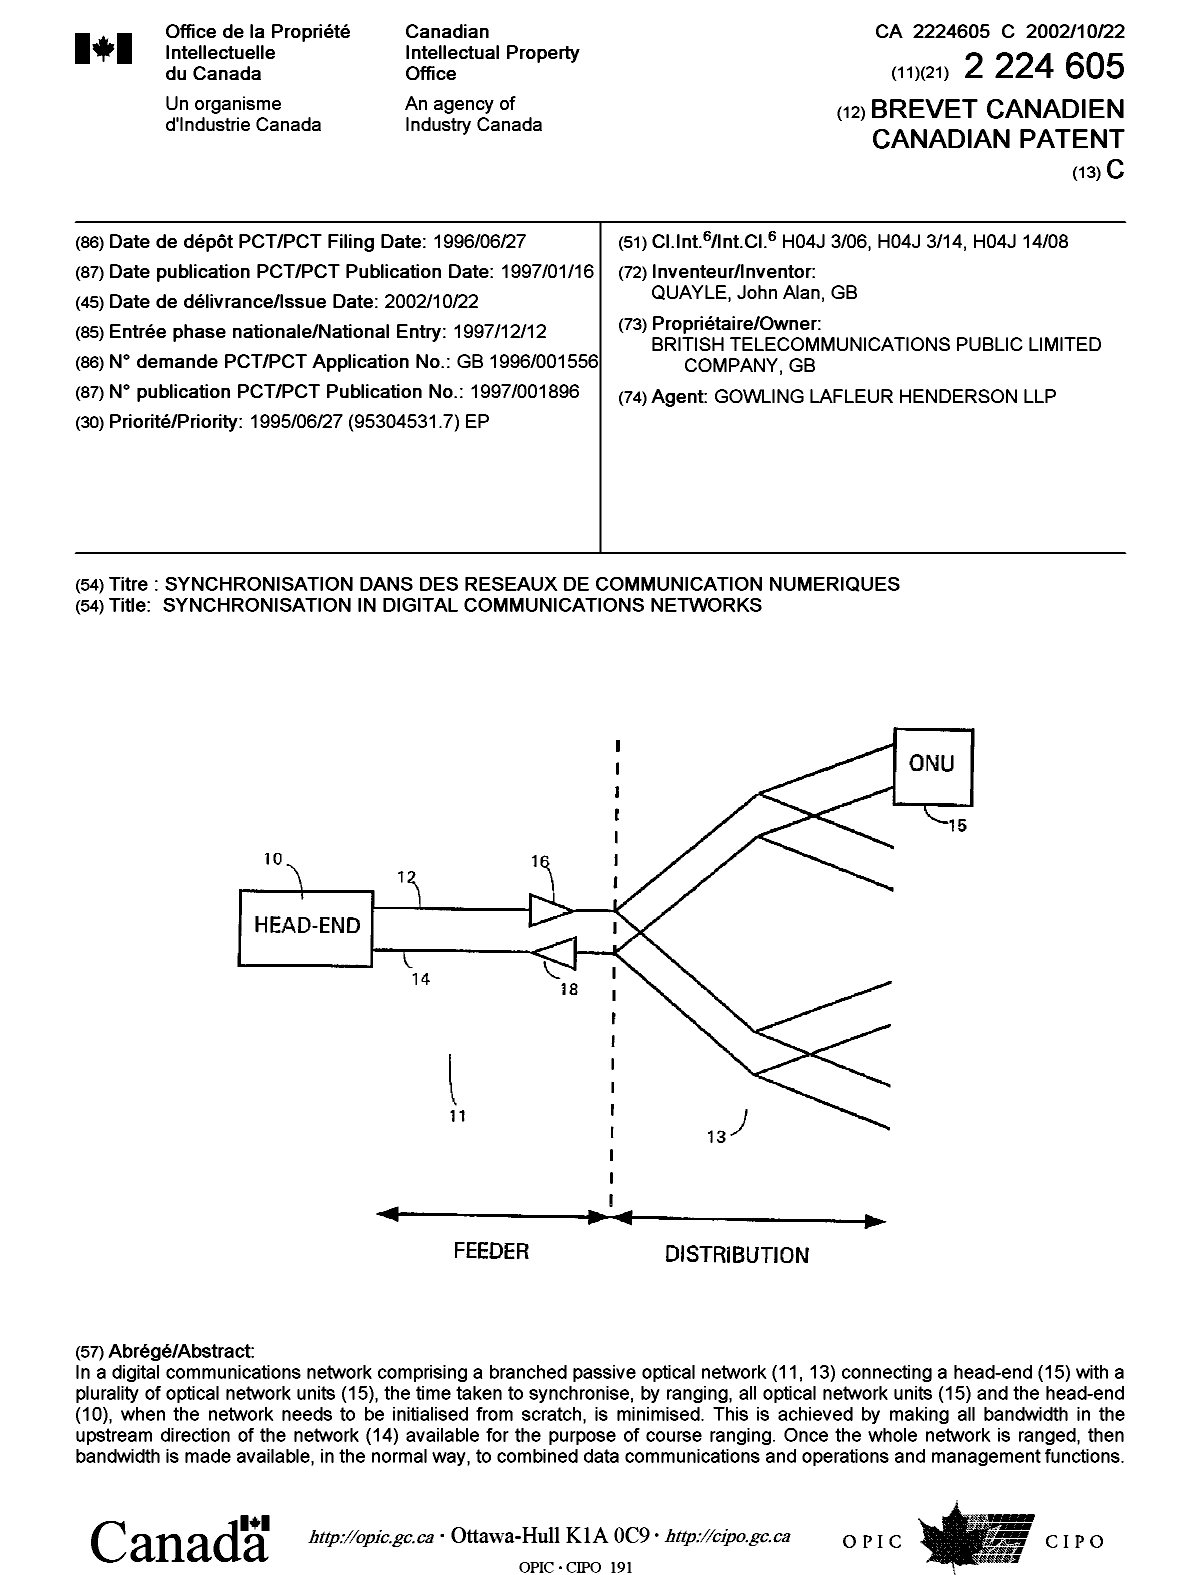 Document de brevet canadien 2224605. Page couverture 20020919. Image 1 de 1